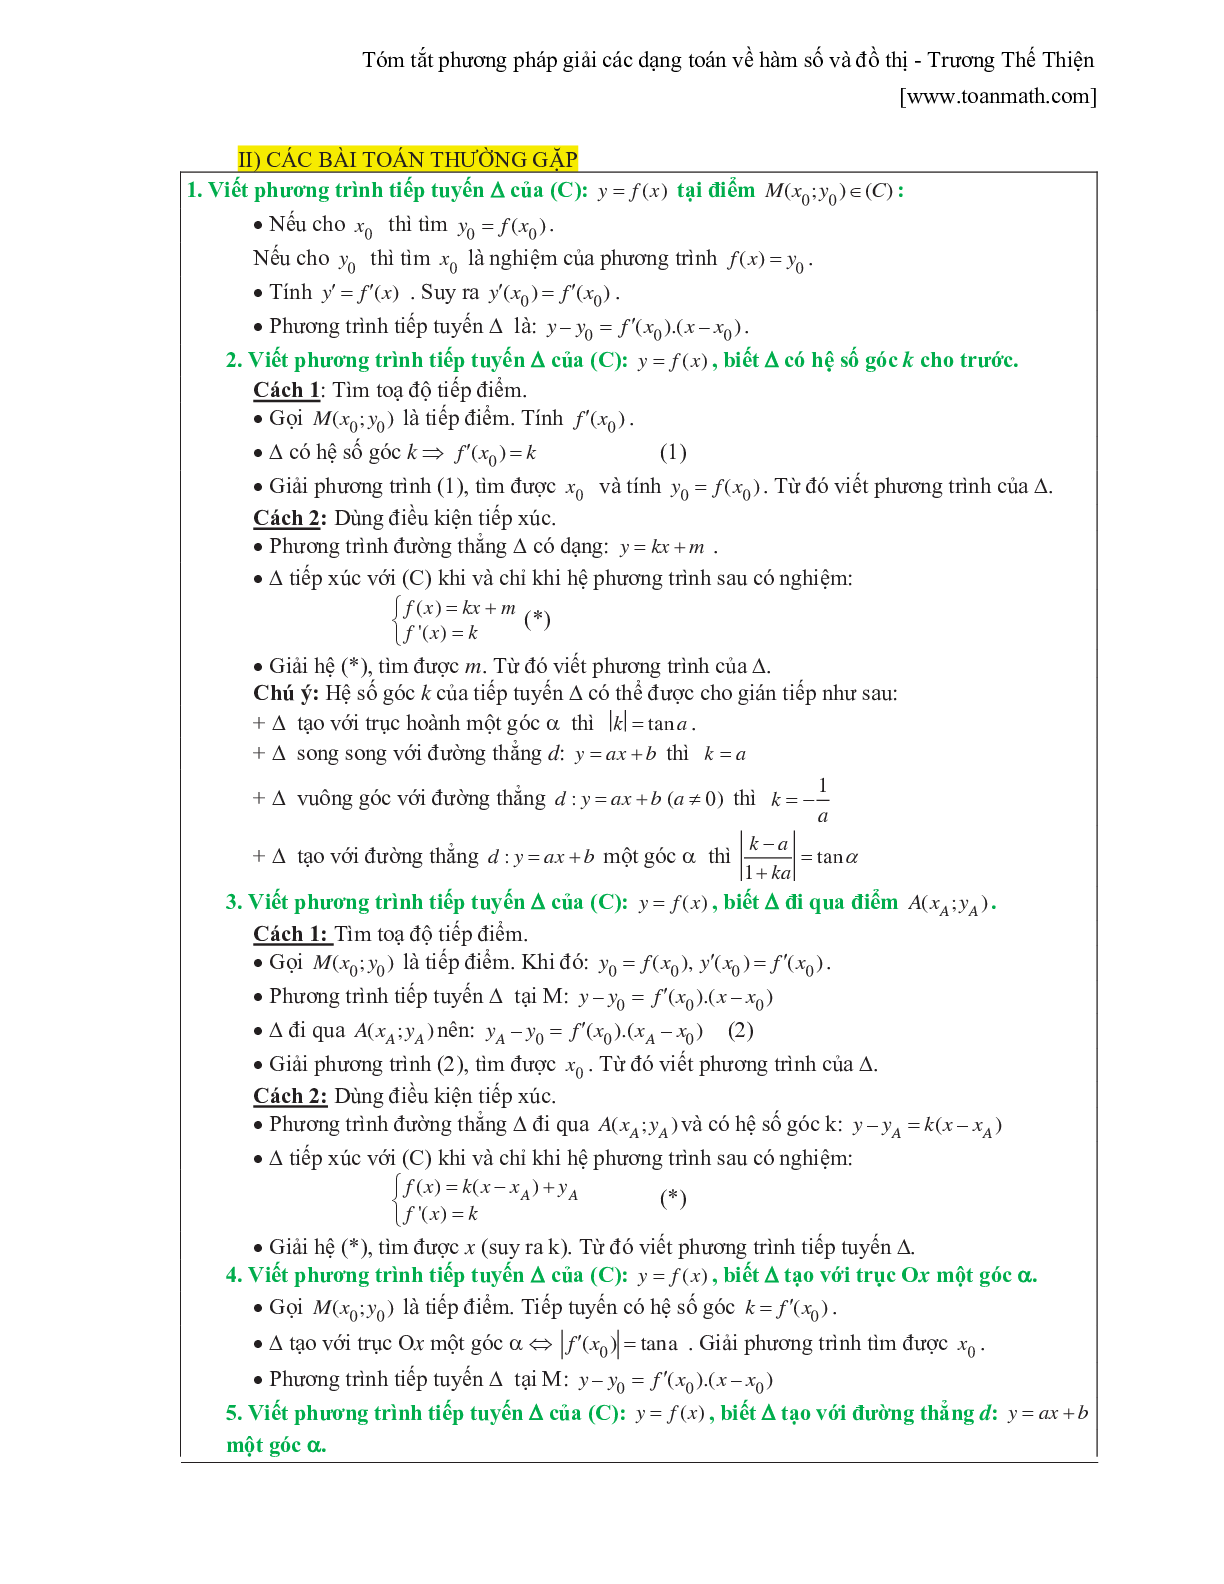 Tóm tắt phương pháp giải các dạng toán về hàm số và đồ thị (trang 8)